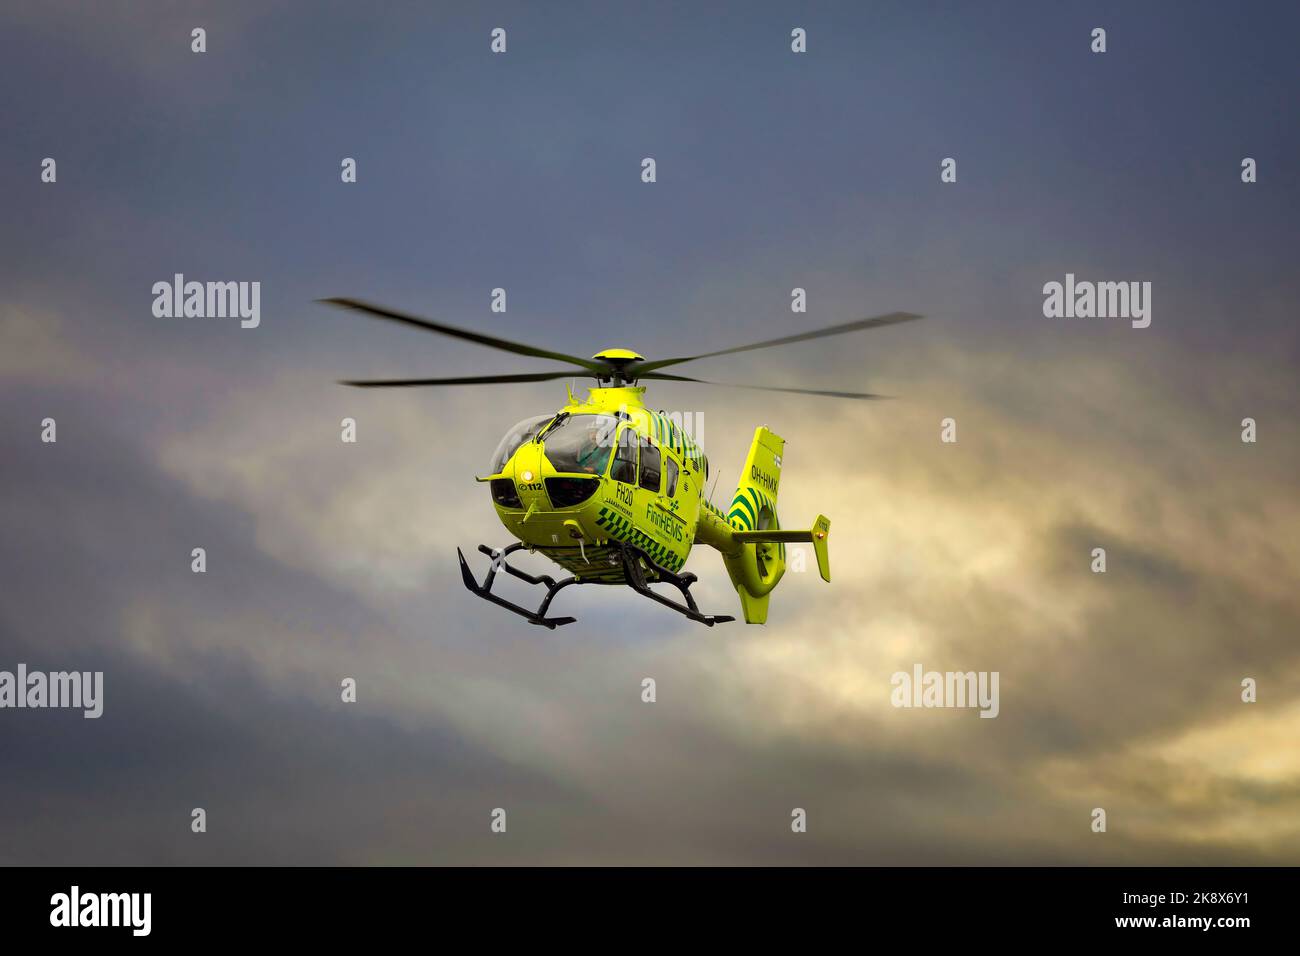 Medizinischer FinnHEMS-Hubschrauber im Flug gegen den dramatischen dunklen Himmel. FinnHEMS ist eine Abkürzung für Finnish Helicopter Emergency Medical Services. Stockfoto